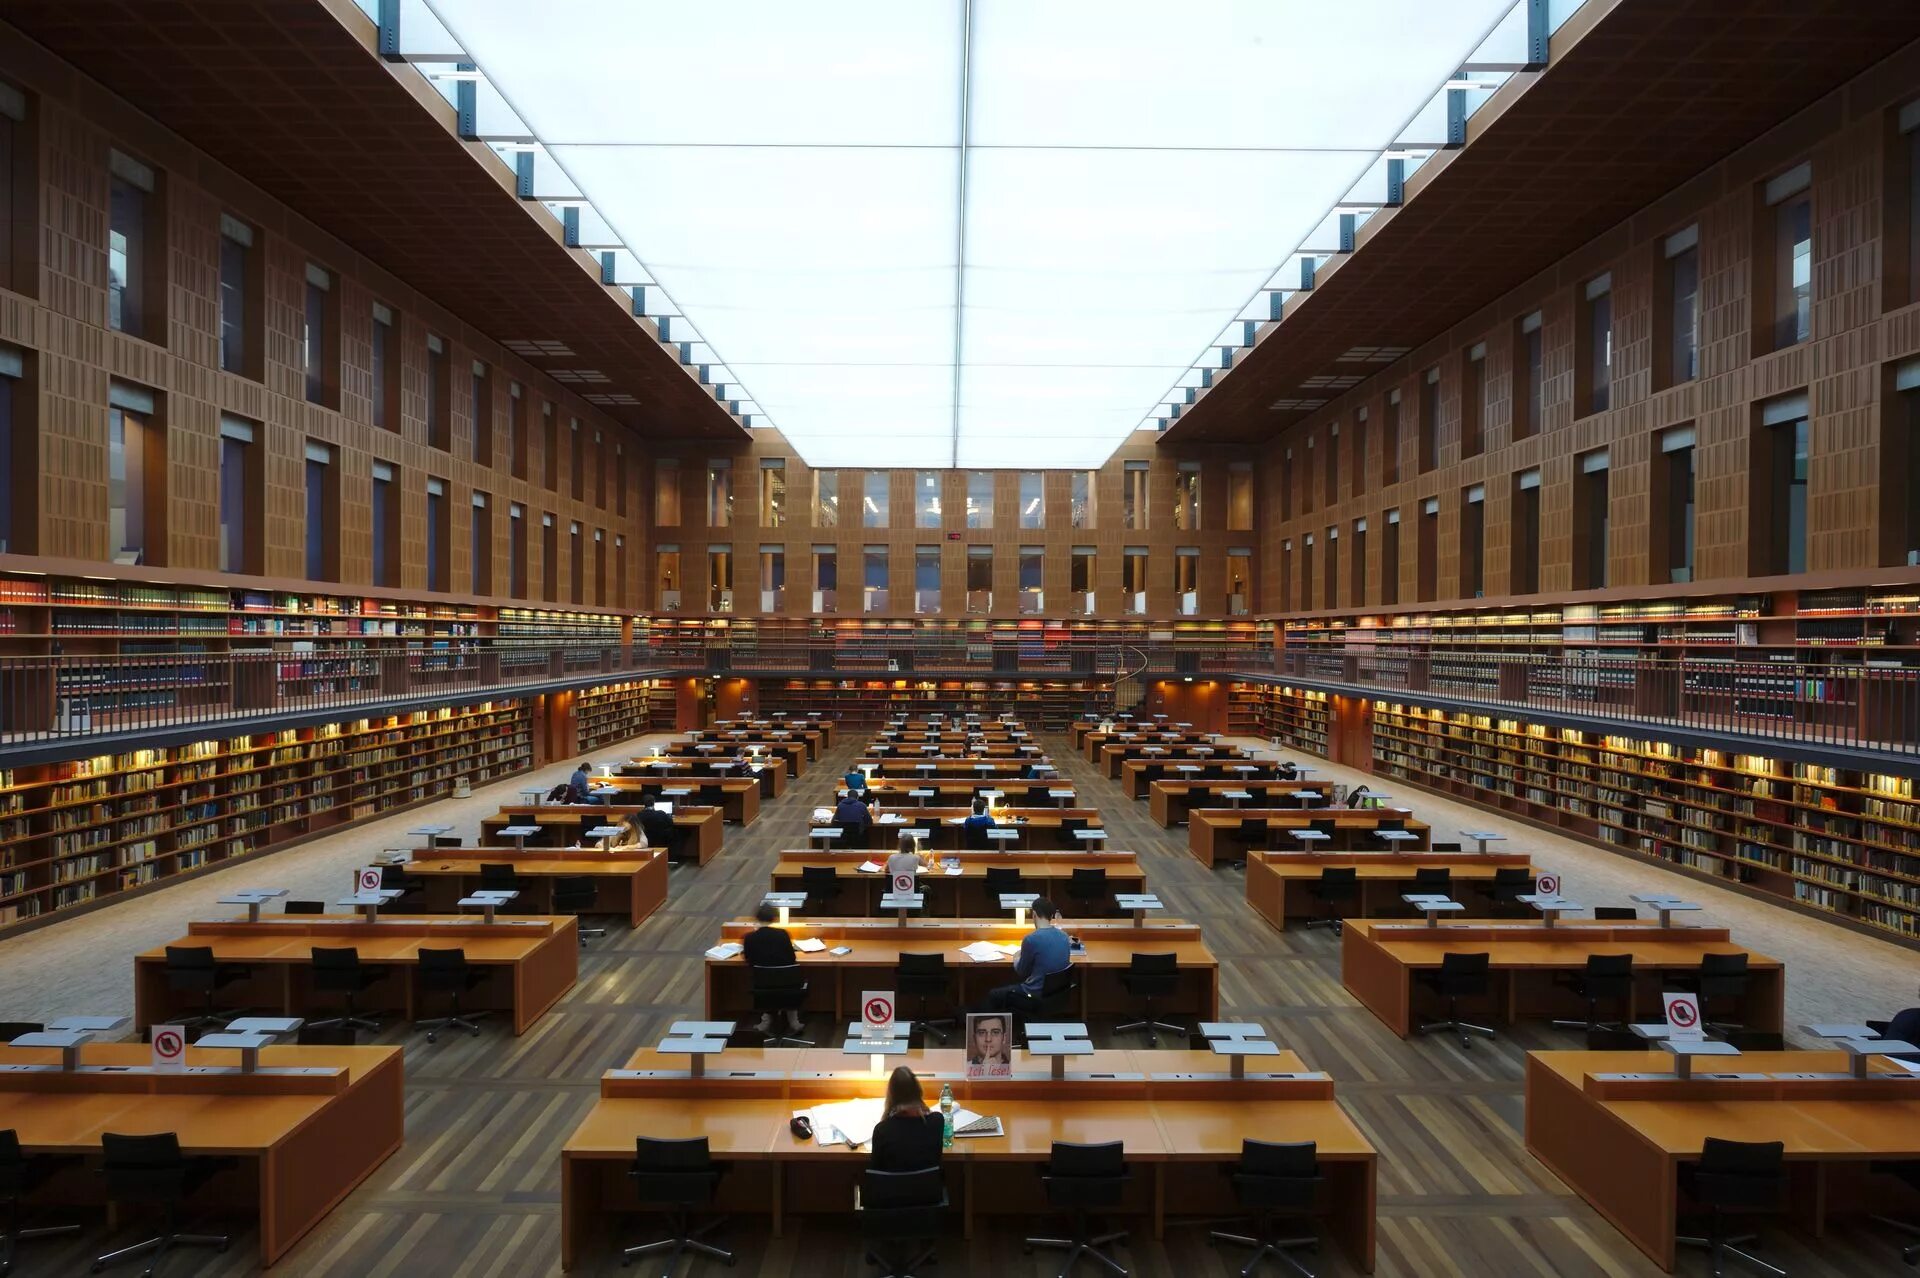 Университет имени Гумбольдта в Берлине. Берлинский университет 1809 г. Ростокский университет в Германии. Университет Гумбольдта в Берлине библиотека.